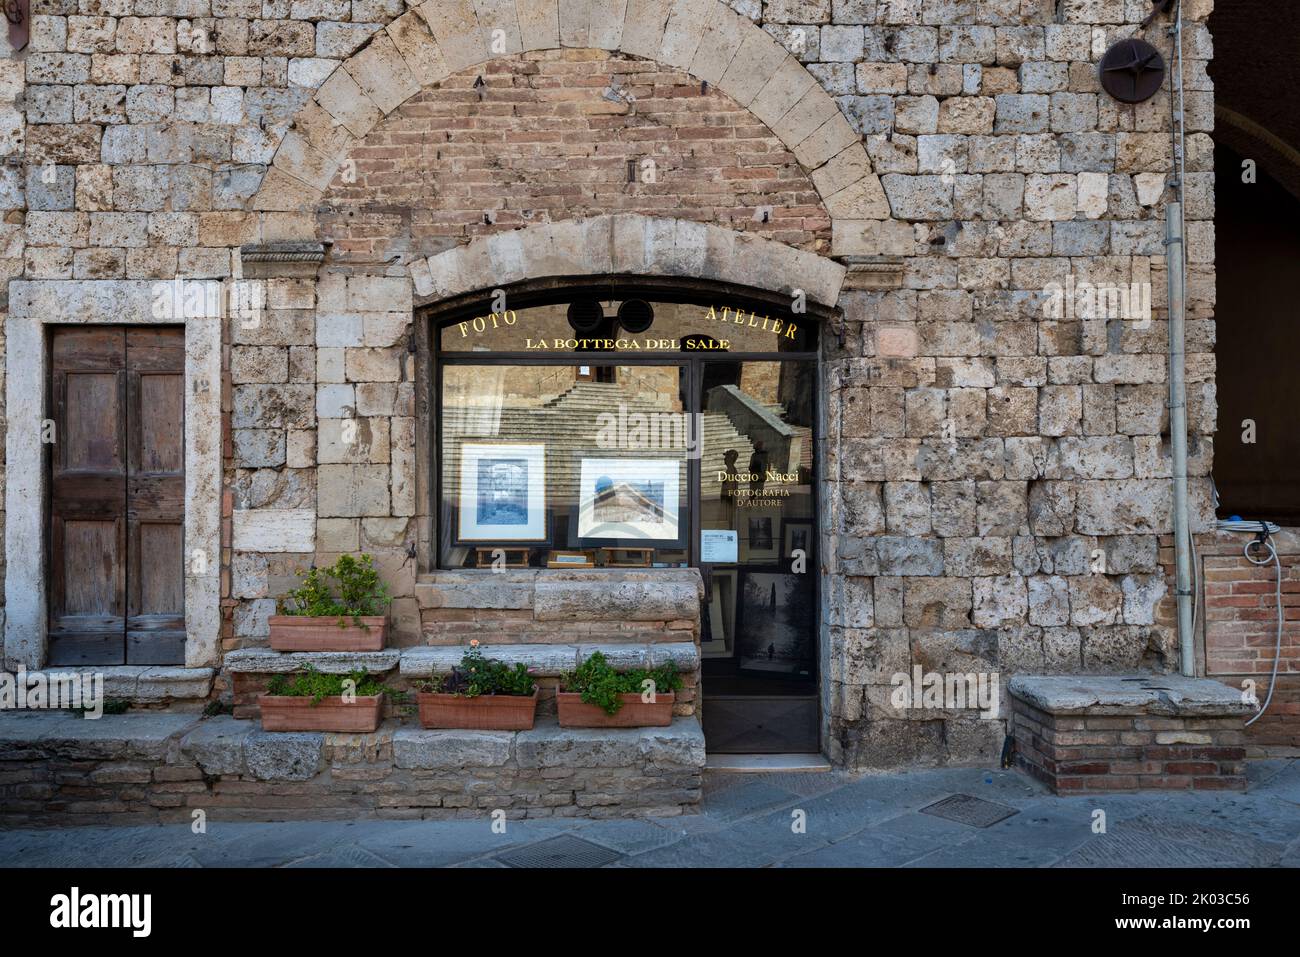 Studio fotografico, negozio fotografico, Piazza del Duomo, San Gimignano, Toscana, Italia Foto Stock